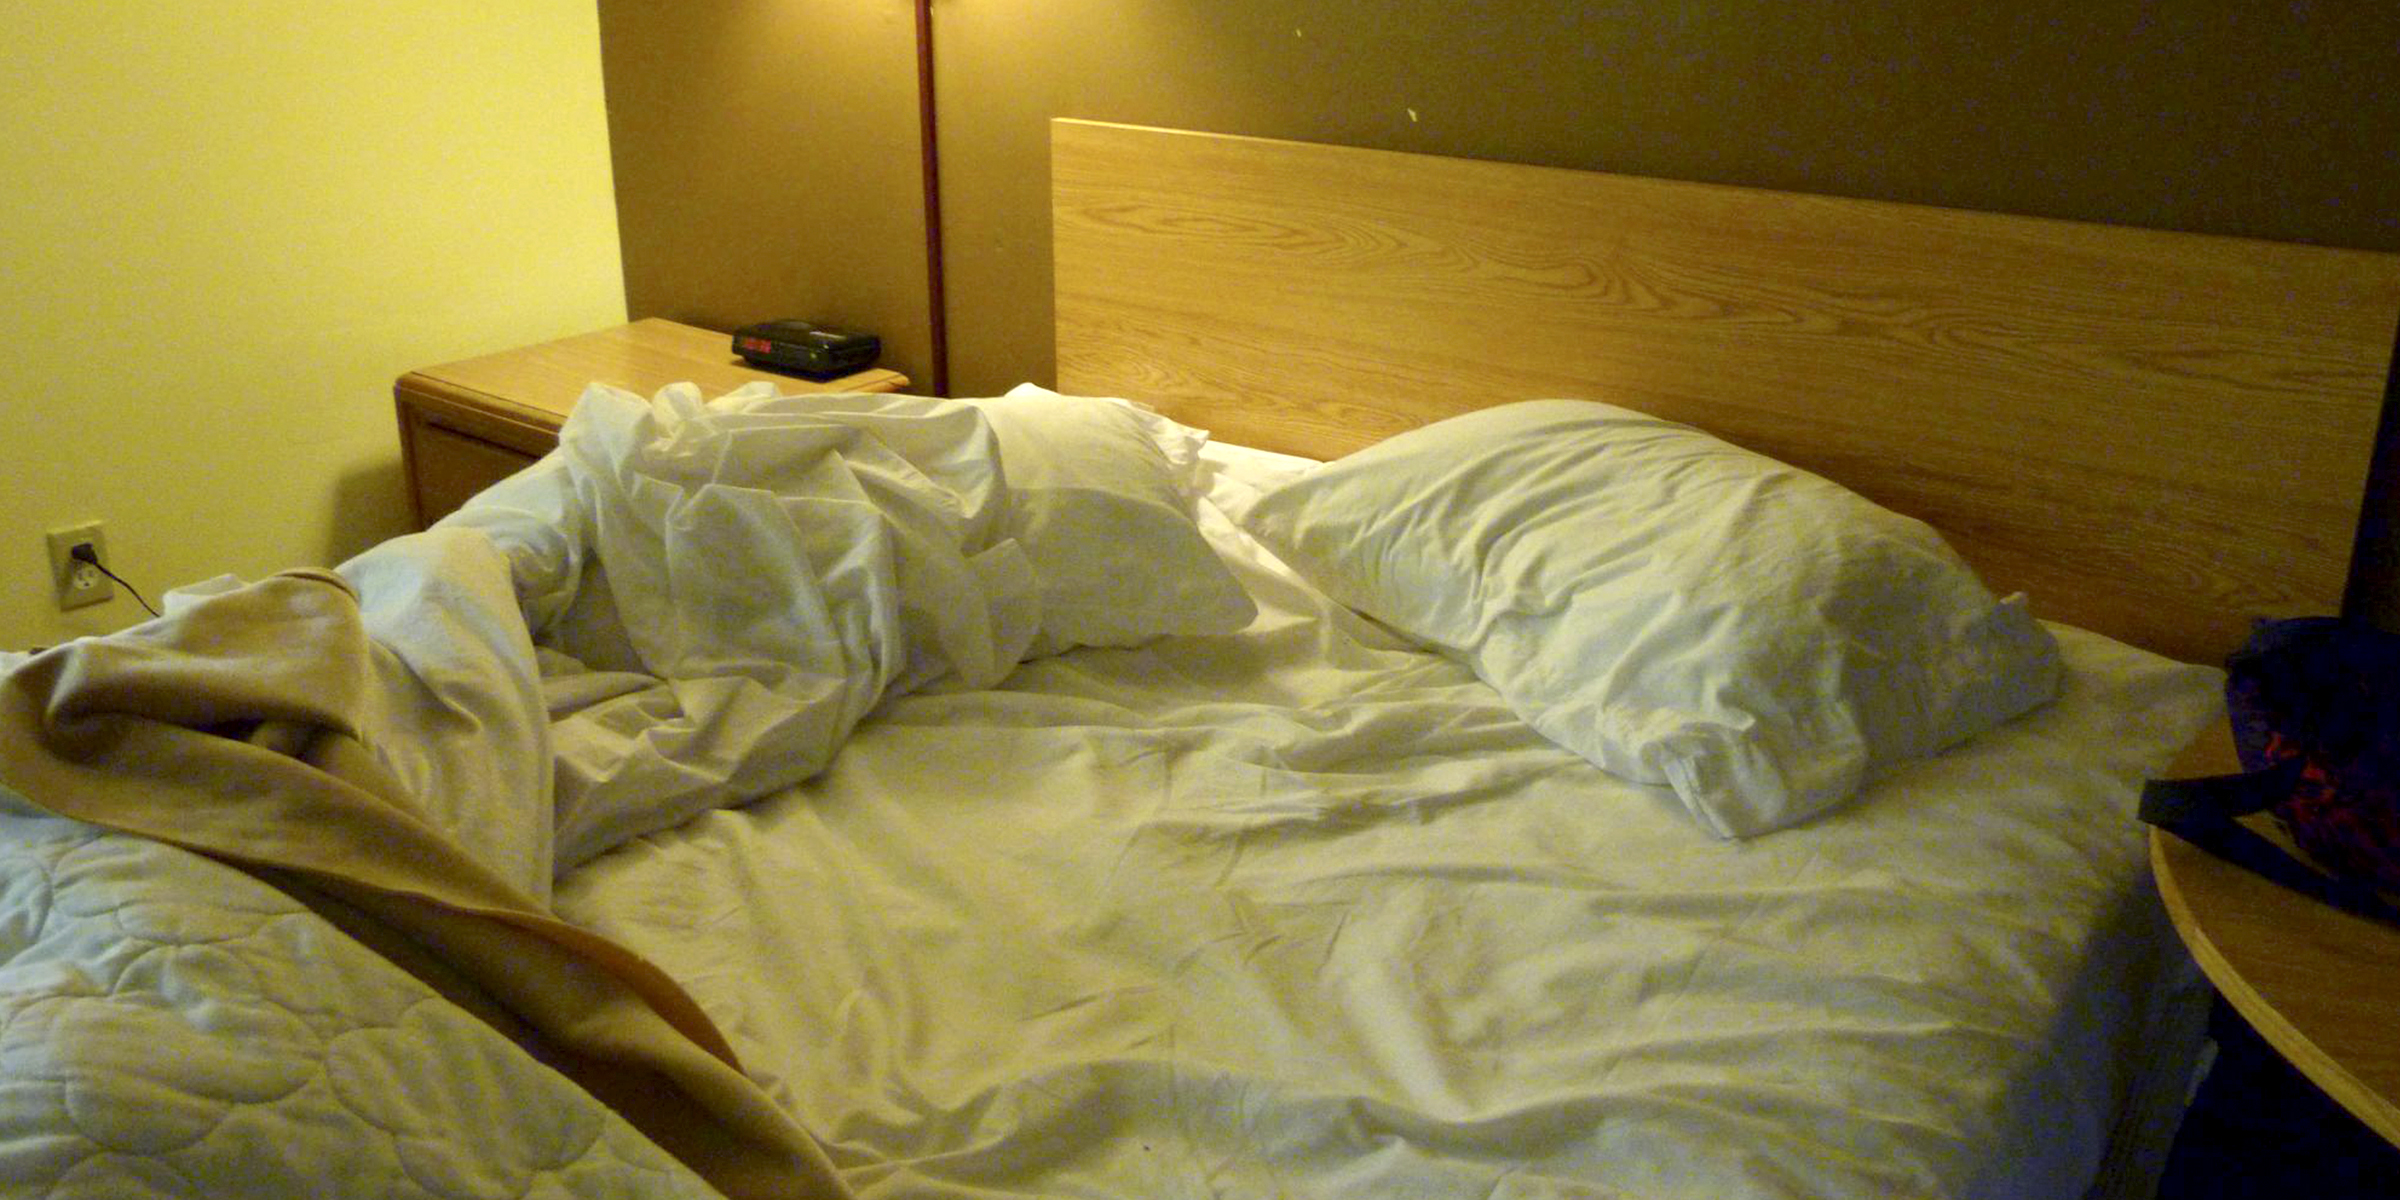 Un lit en désordre avec des draps et des oreillers blancs | Source : flickr.com/CC BY 2.0/Rusty Clark ~ 100K Photos